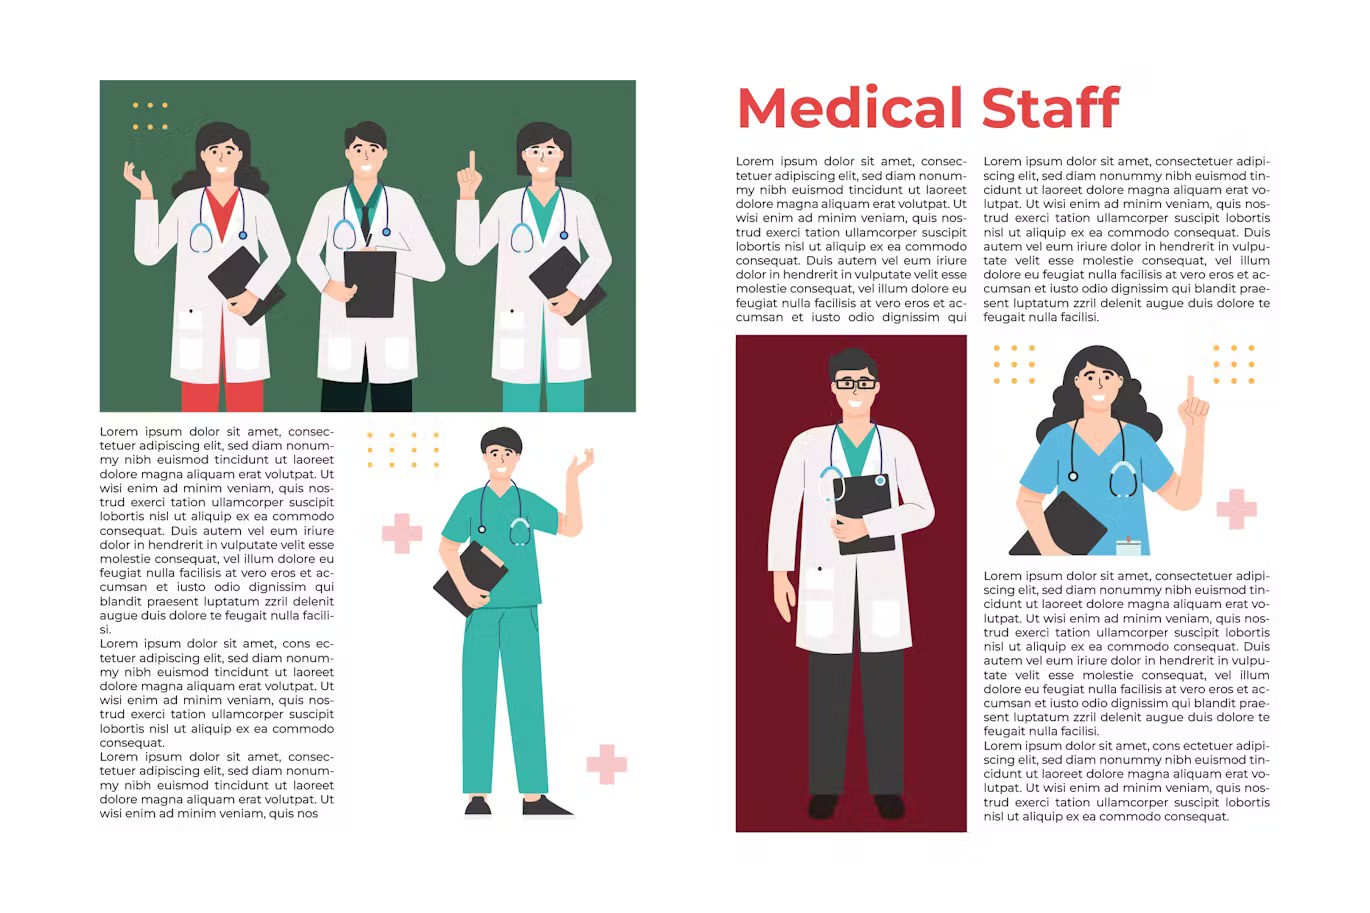 Medical Staff People Illustrations-4.jpg